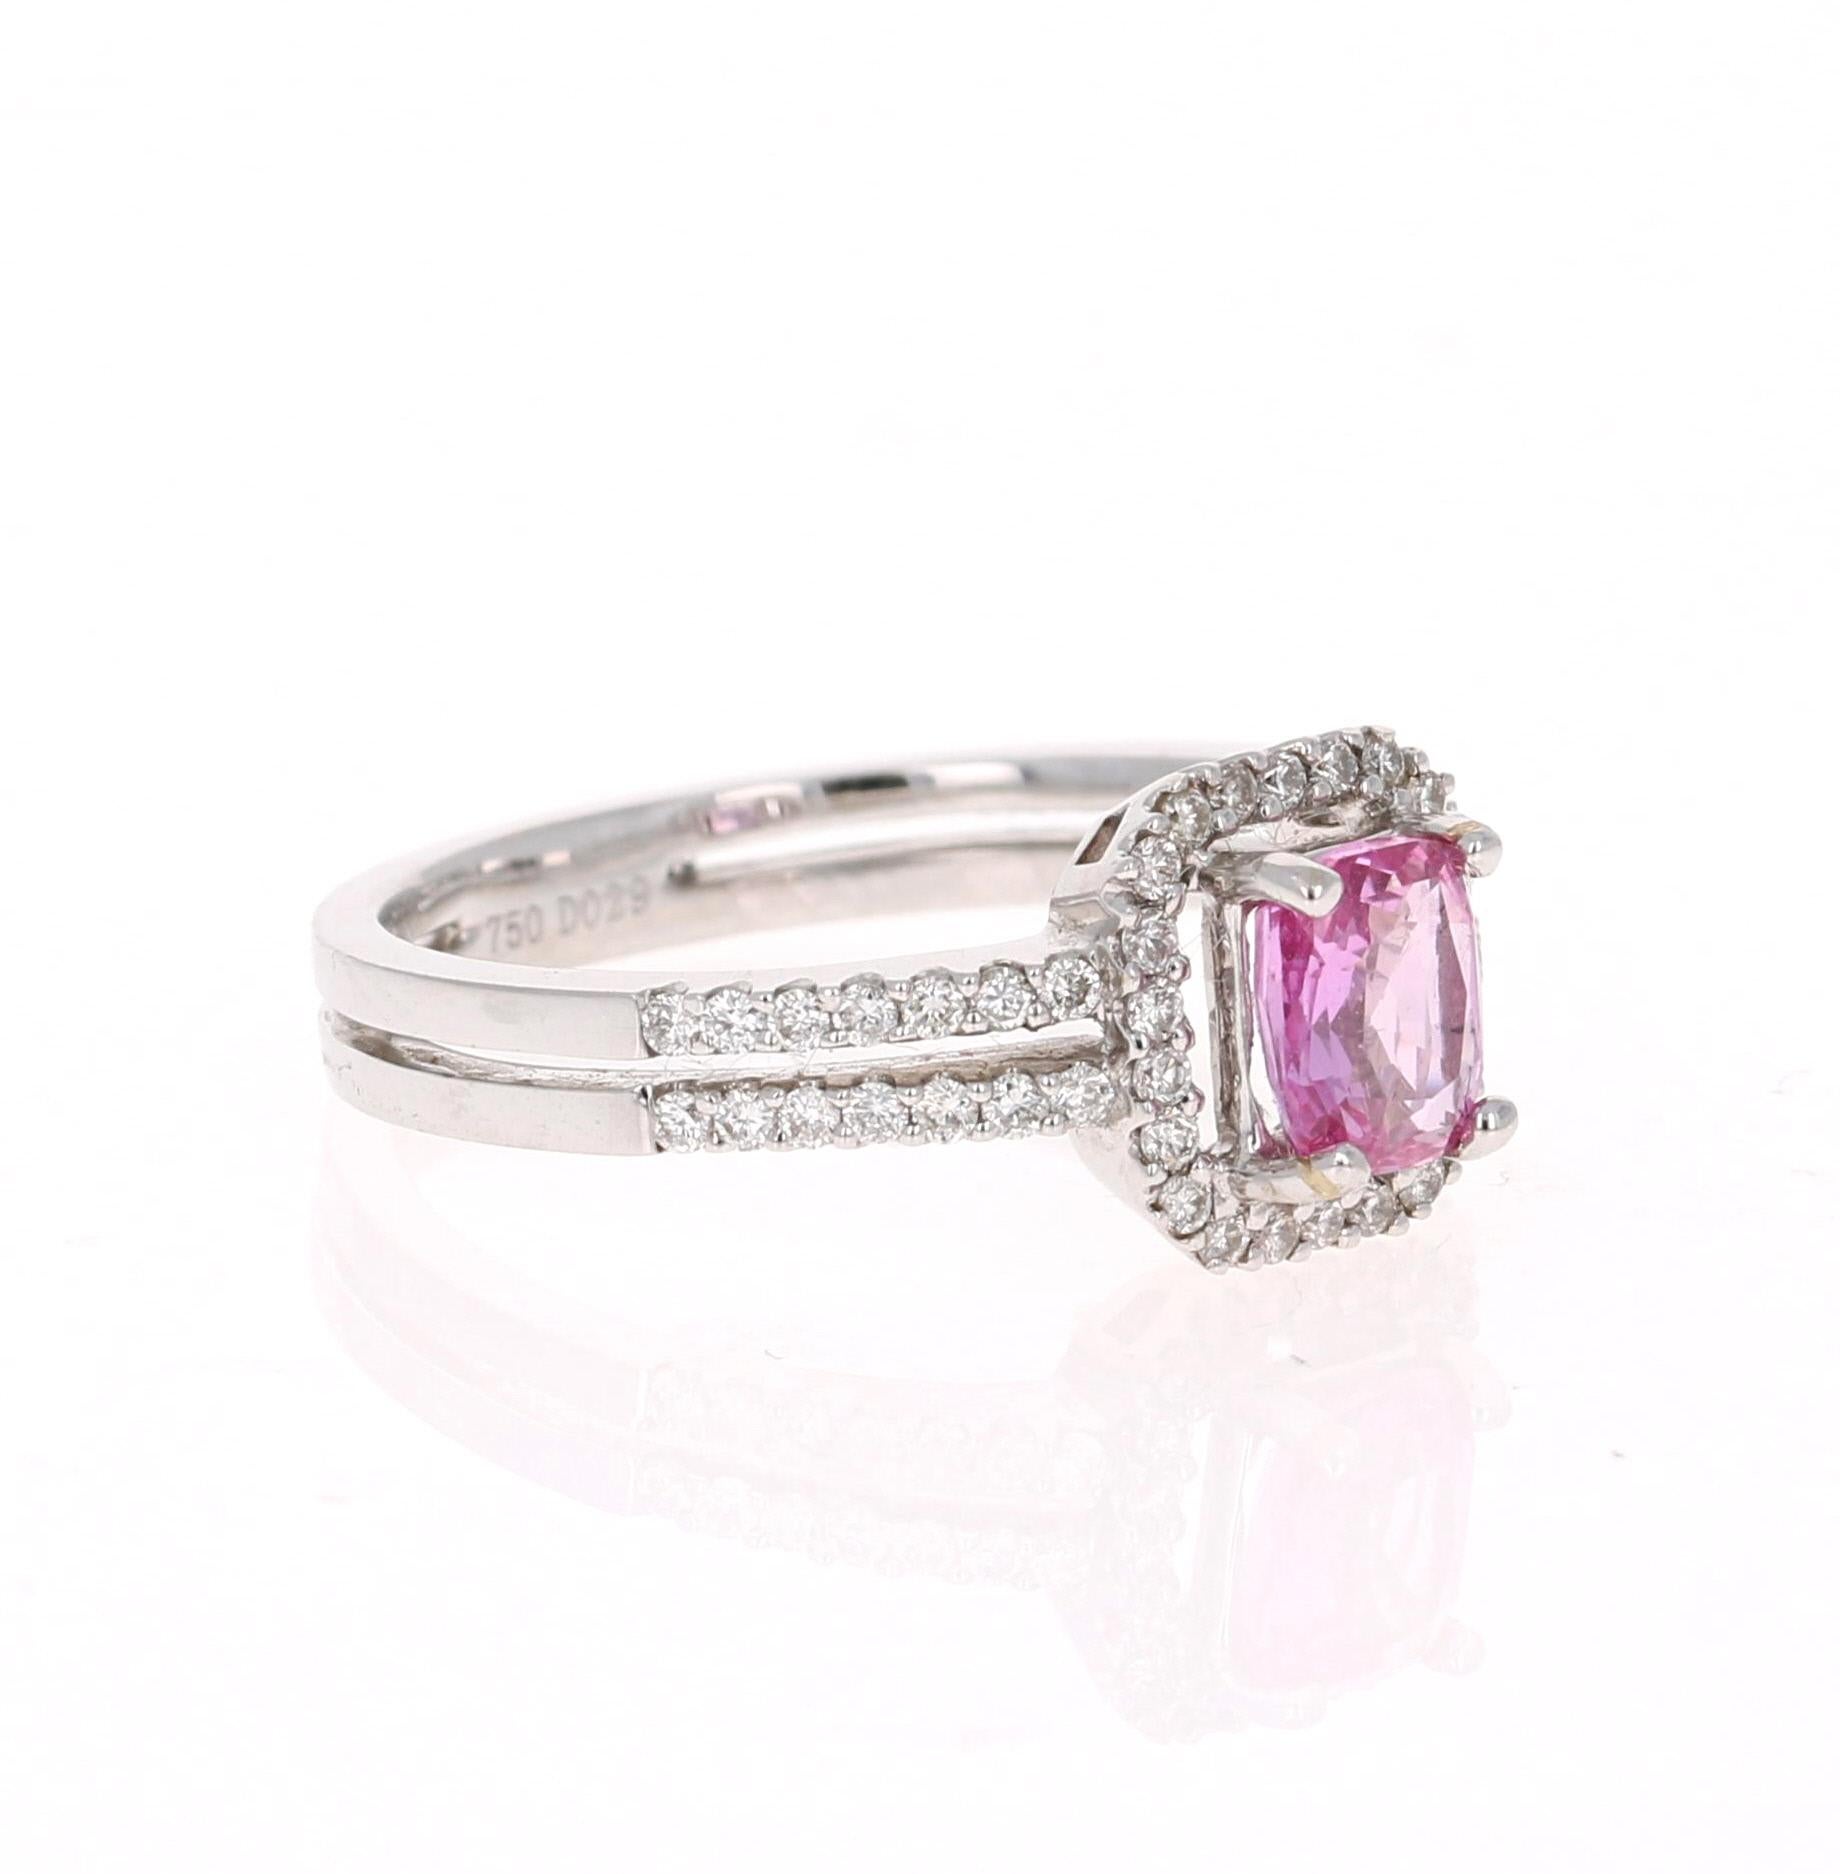 Cushion Cut 1.22 Carat GIA Certified Pink Sapphire Diamond Ring 14 Karat White Gold